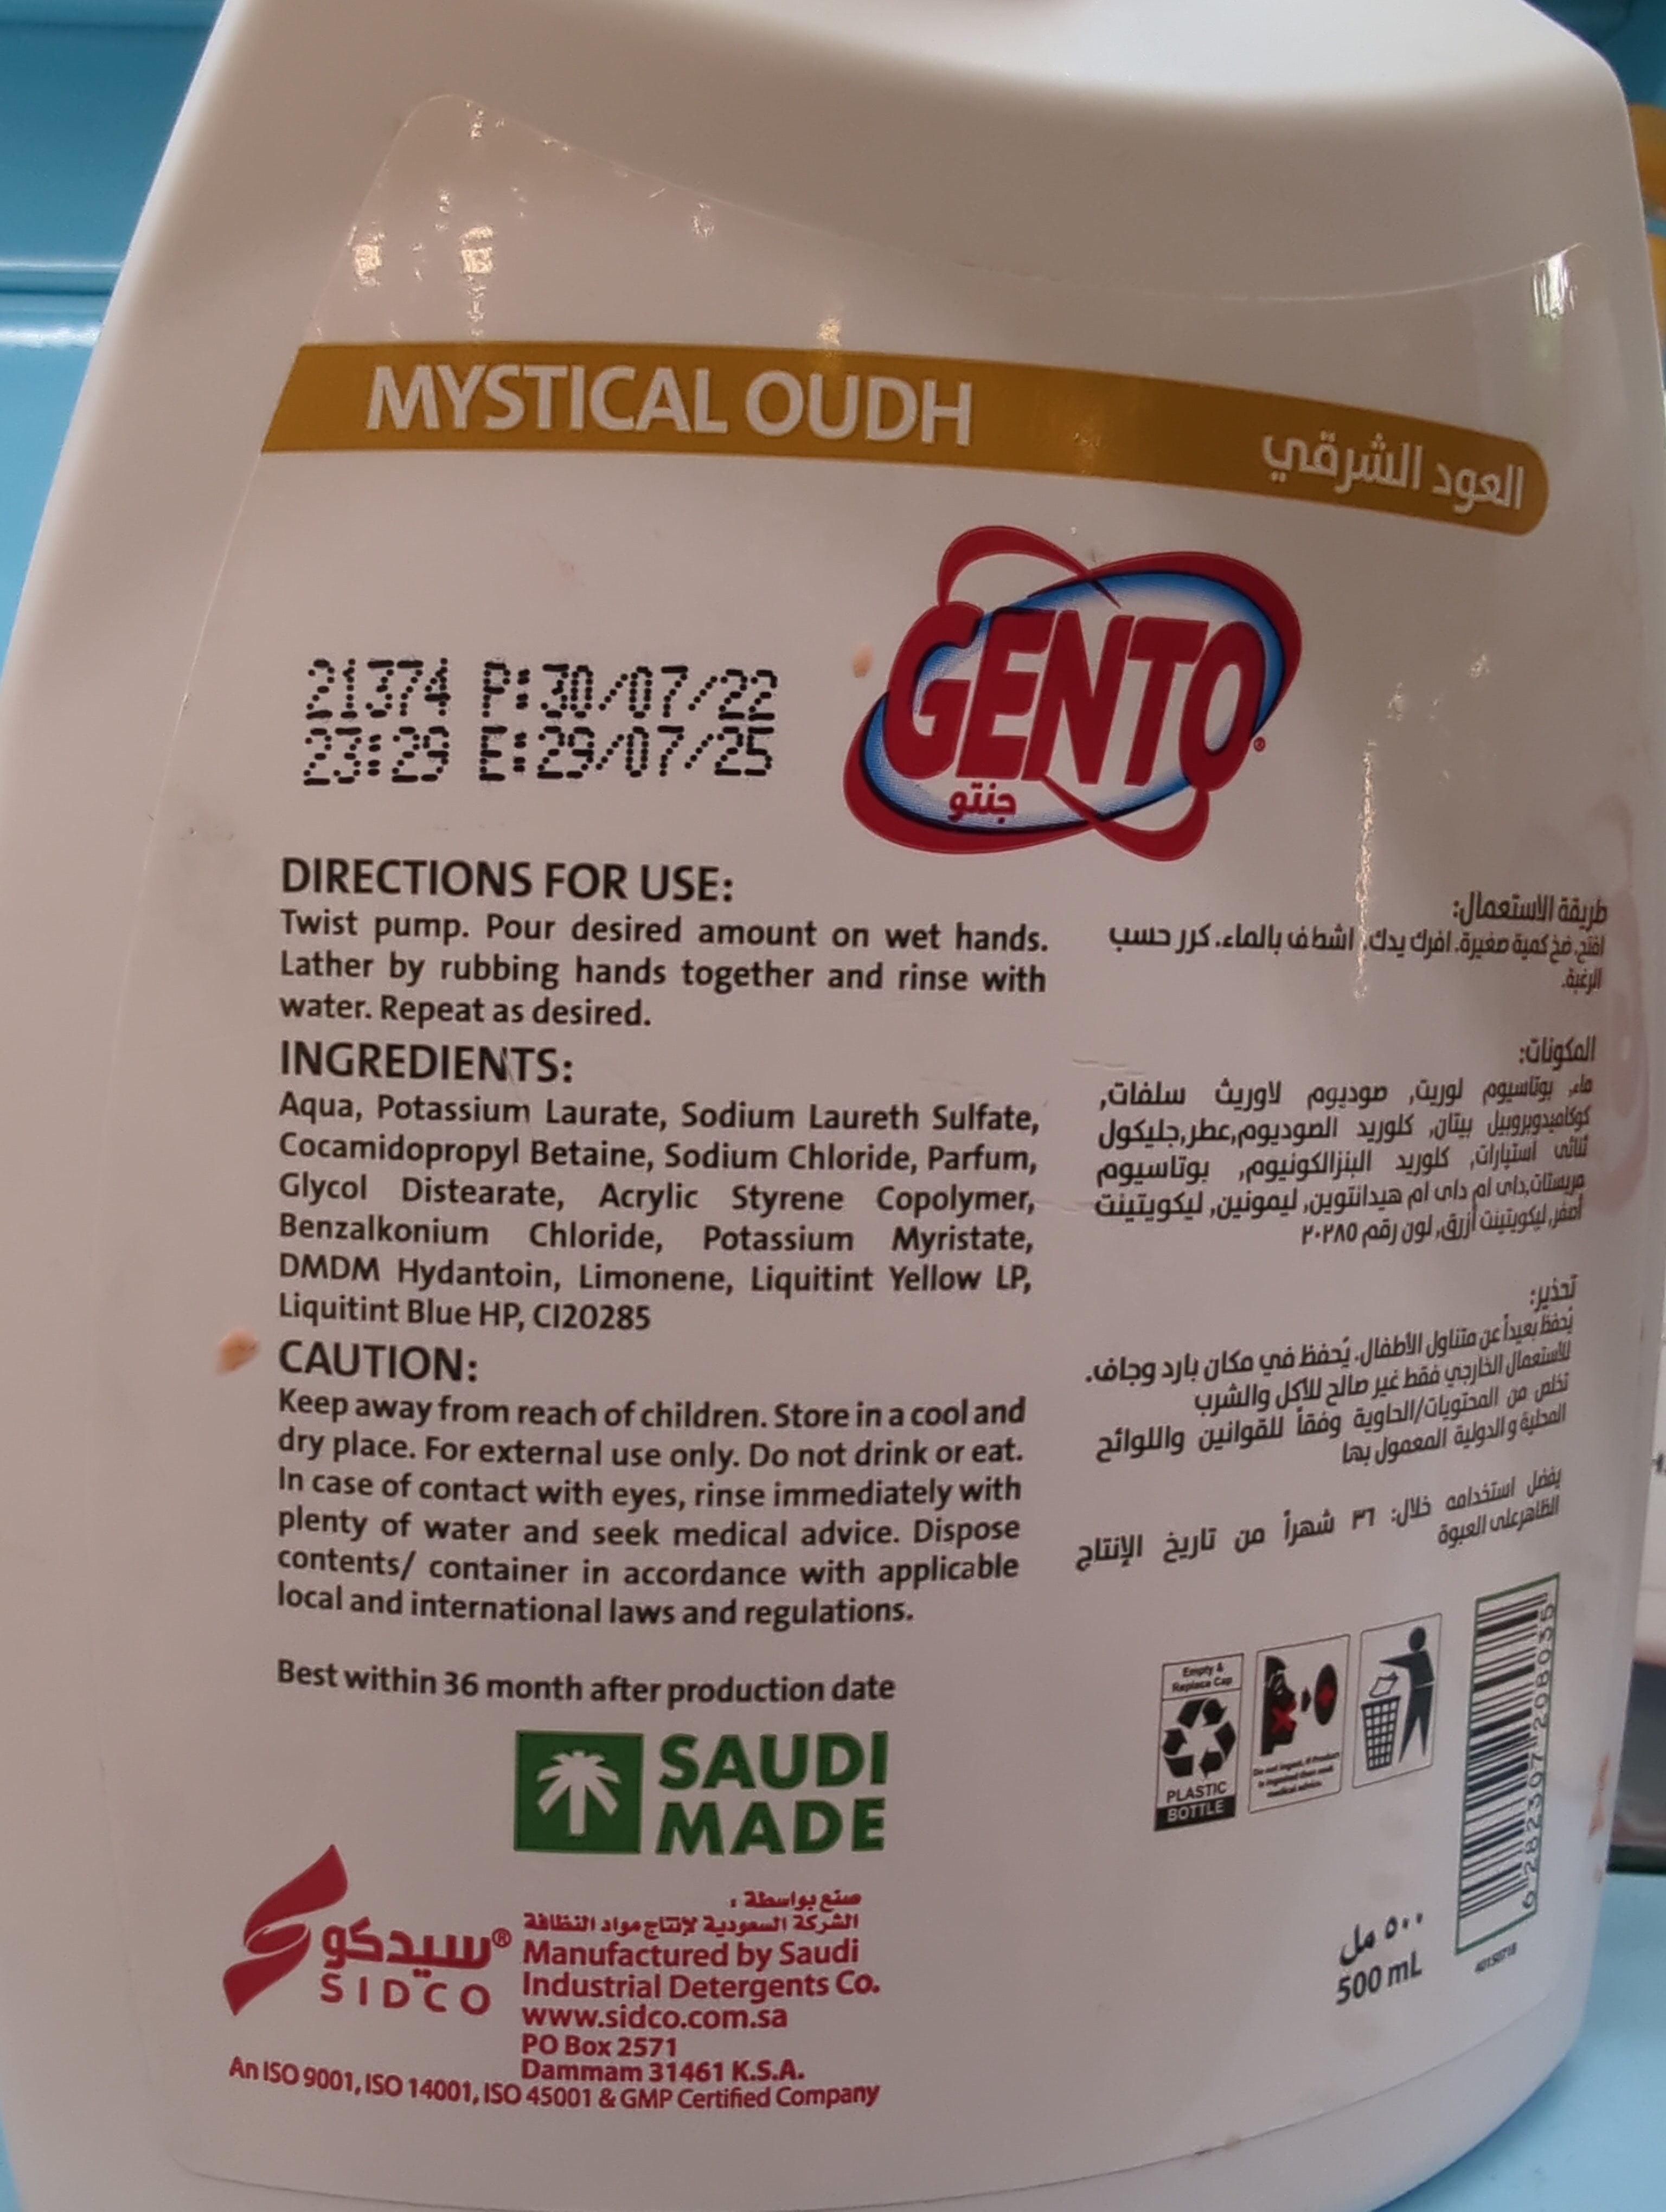 Gento's Mystical Oud Hand wash - 500 ml - 製品 - en